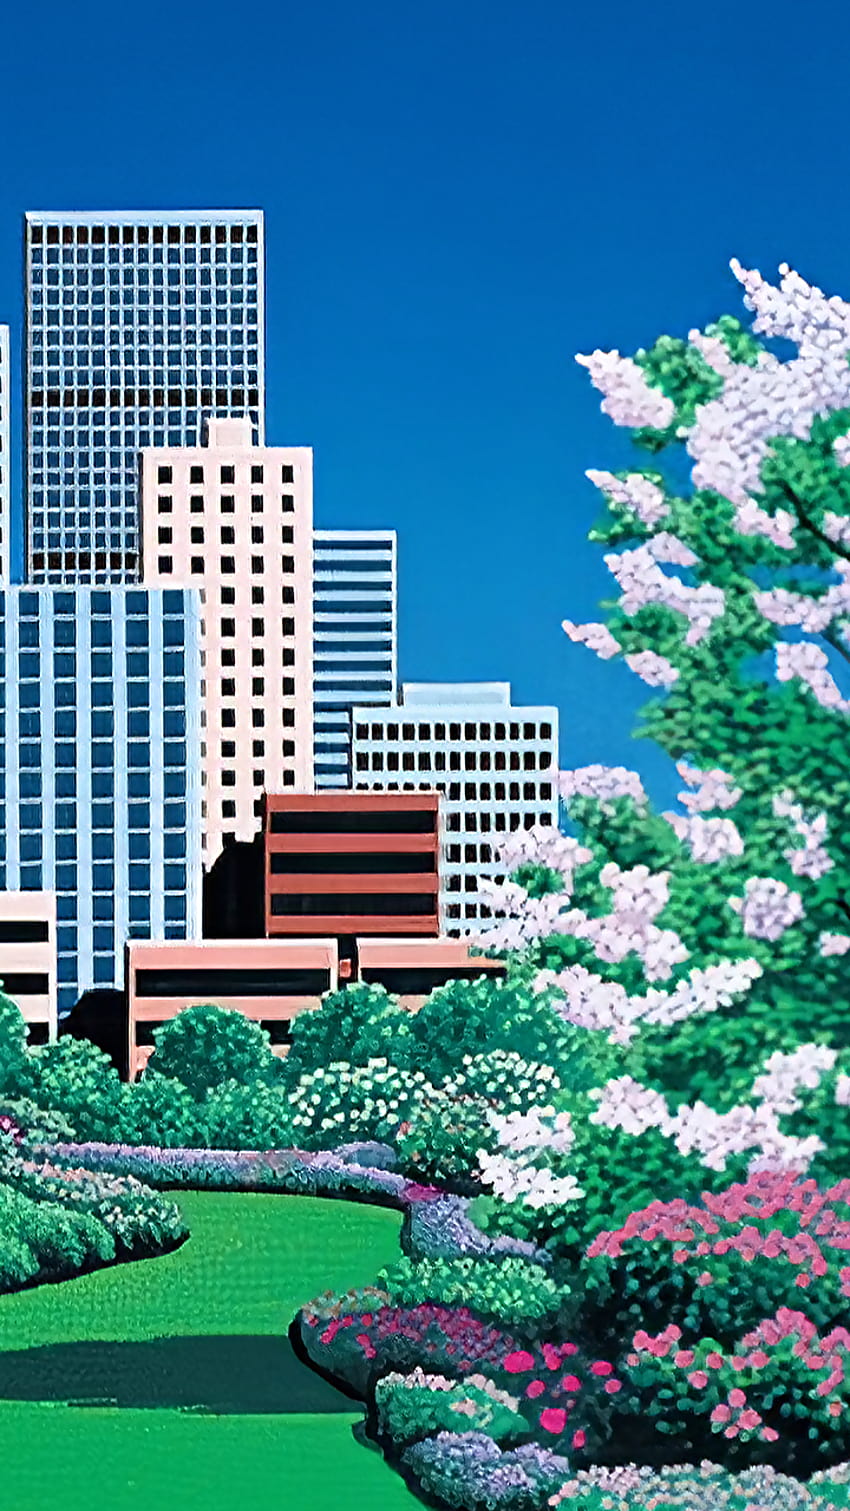 Taman Kota oleh Hiroshi Nagai [2560x1440] : r/, hiroshi nagai iphone wallpaper ponsel HD